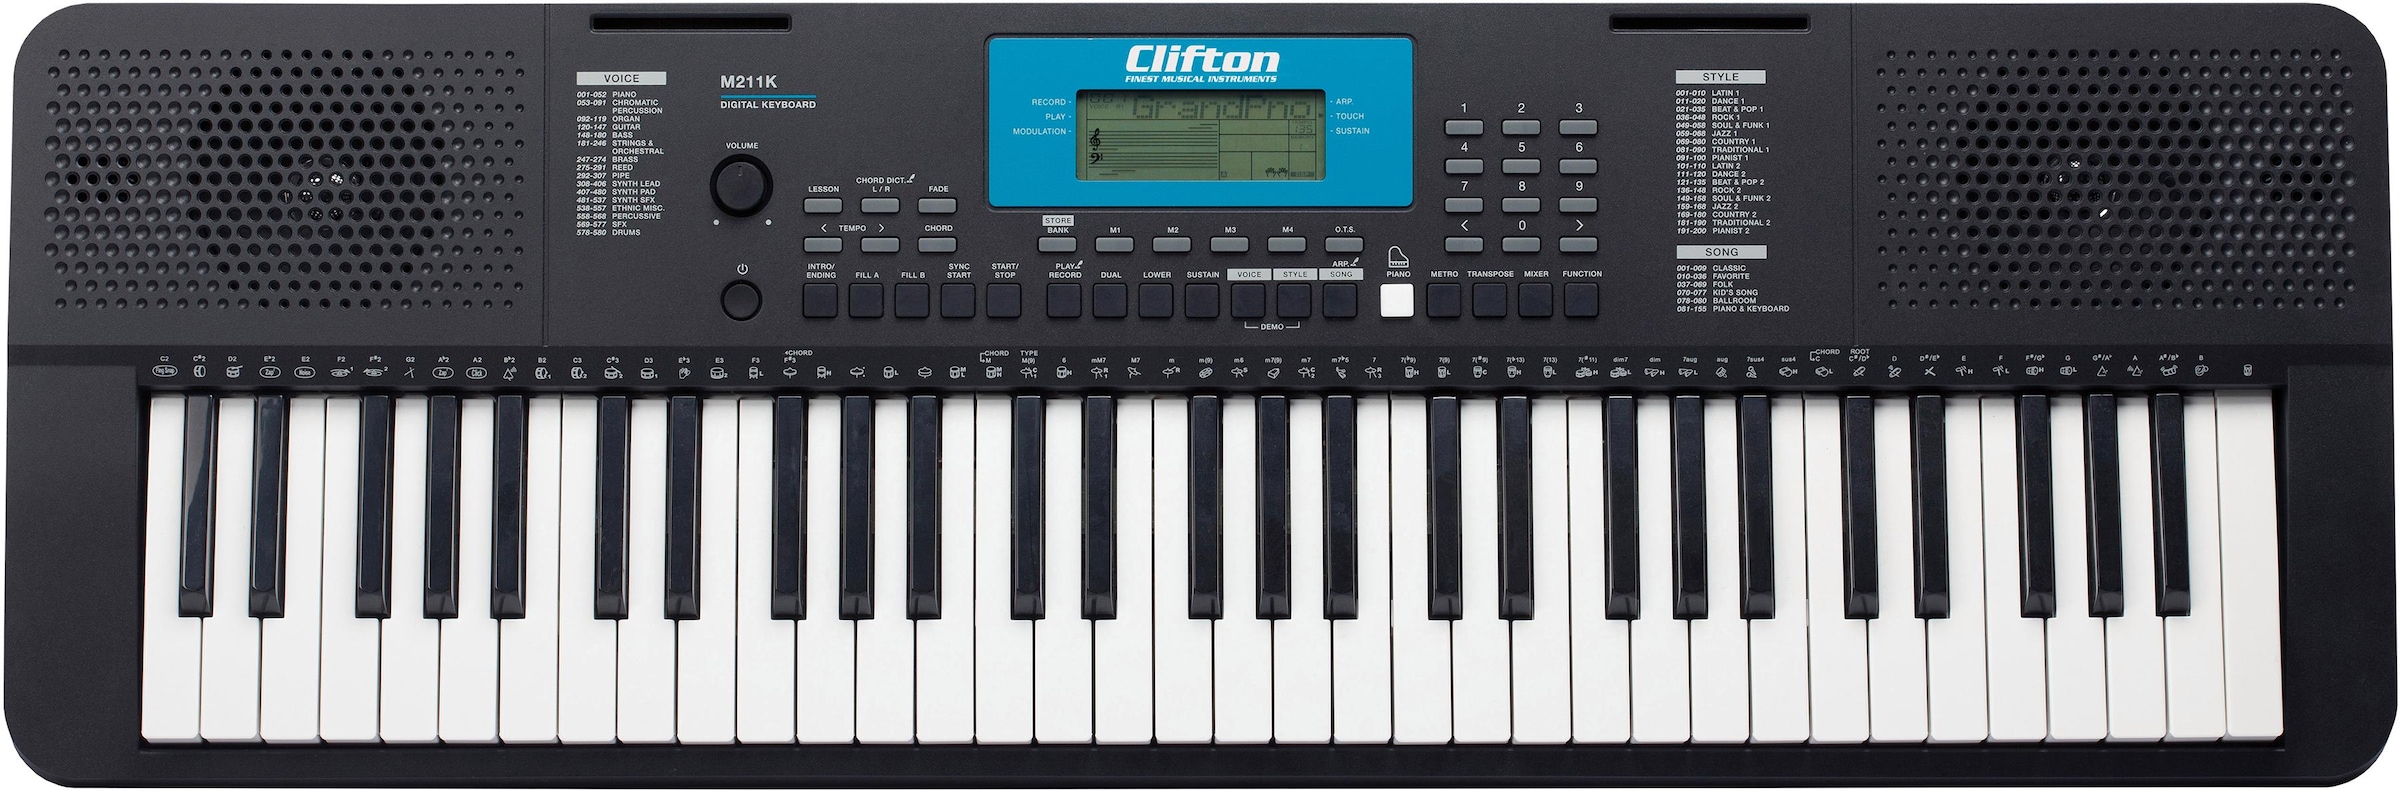 | mit verschiedenen 200 »M211«, OTTO kaufen Home-Keyboard Schlagzeug Clifton online Grooves